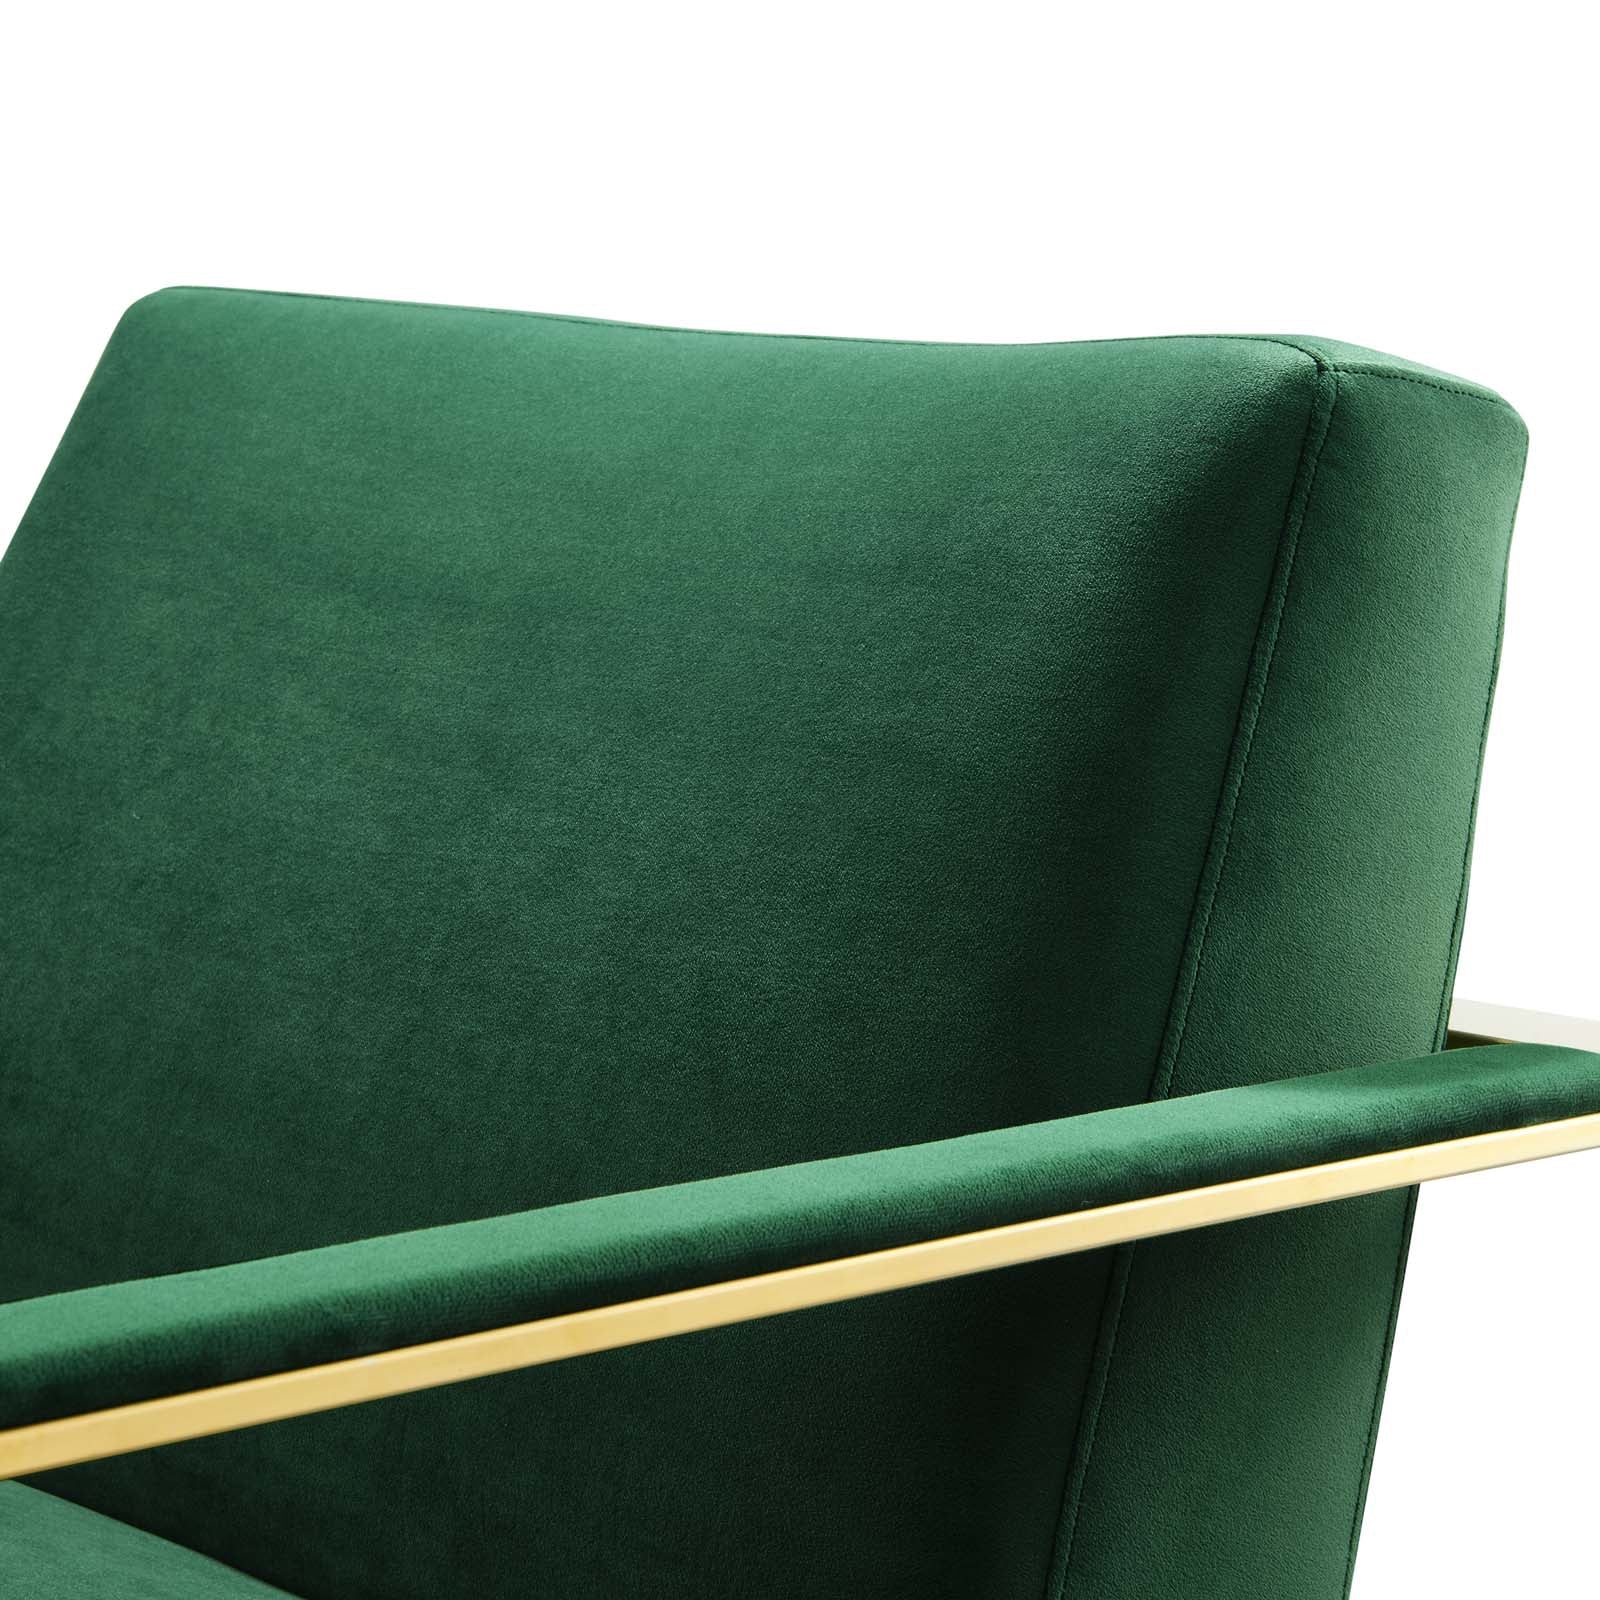 Seg Performance Velvet Accent Chair - East Shore Modern Home Furnishings